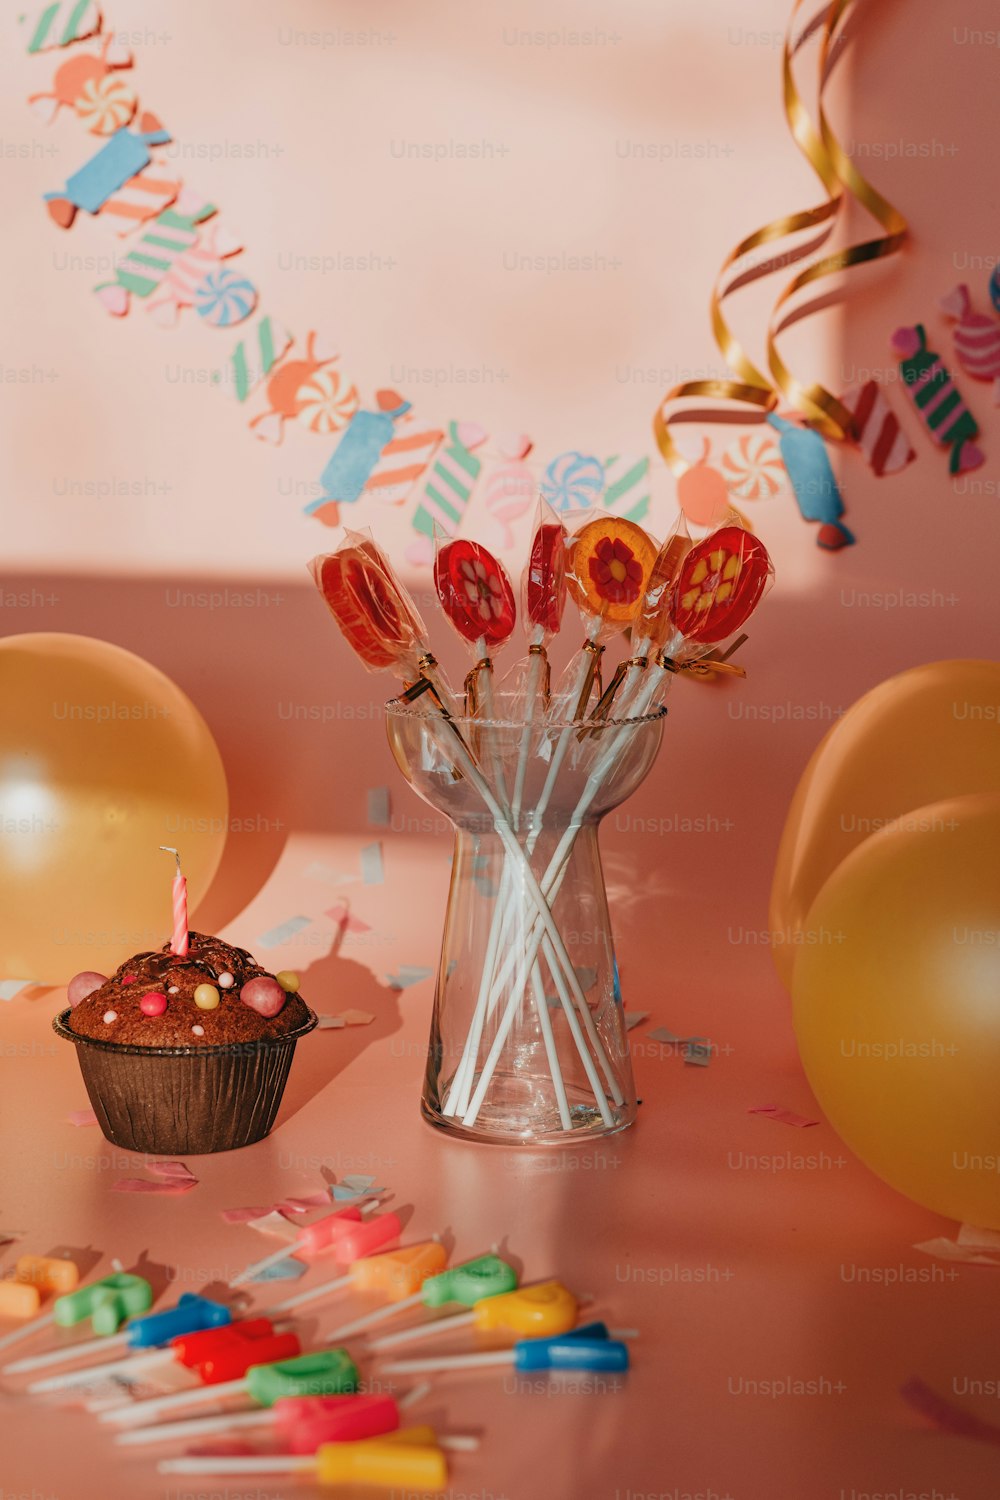 un cupcake sur une table avec des ballons et des confettis